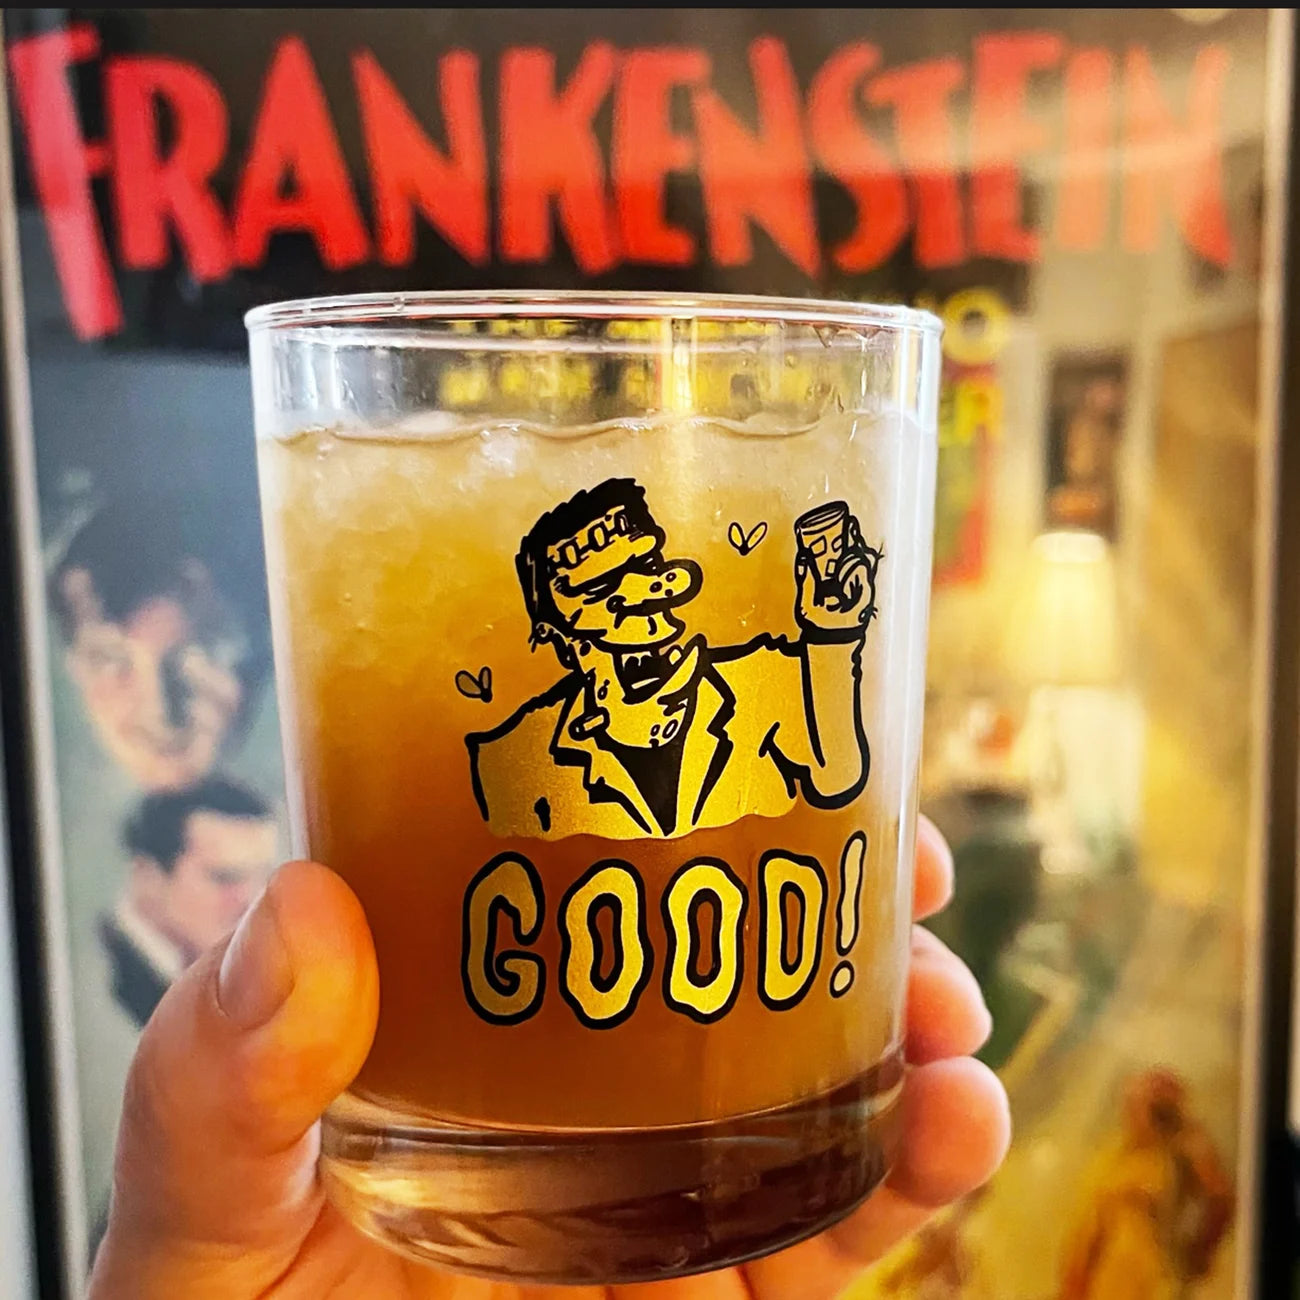 GOOD! Frankenstein Old Fashioned glass